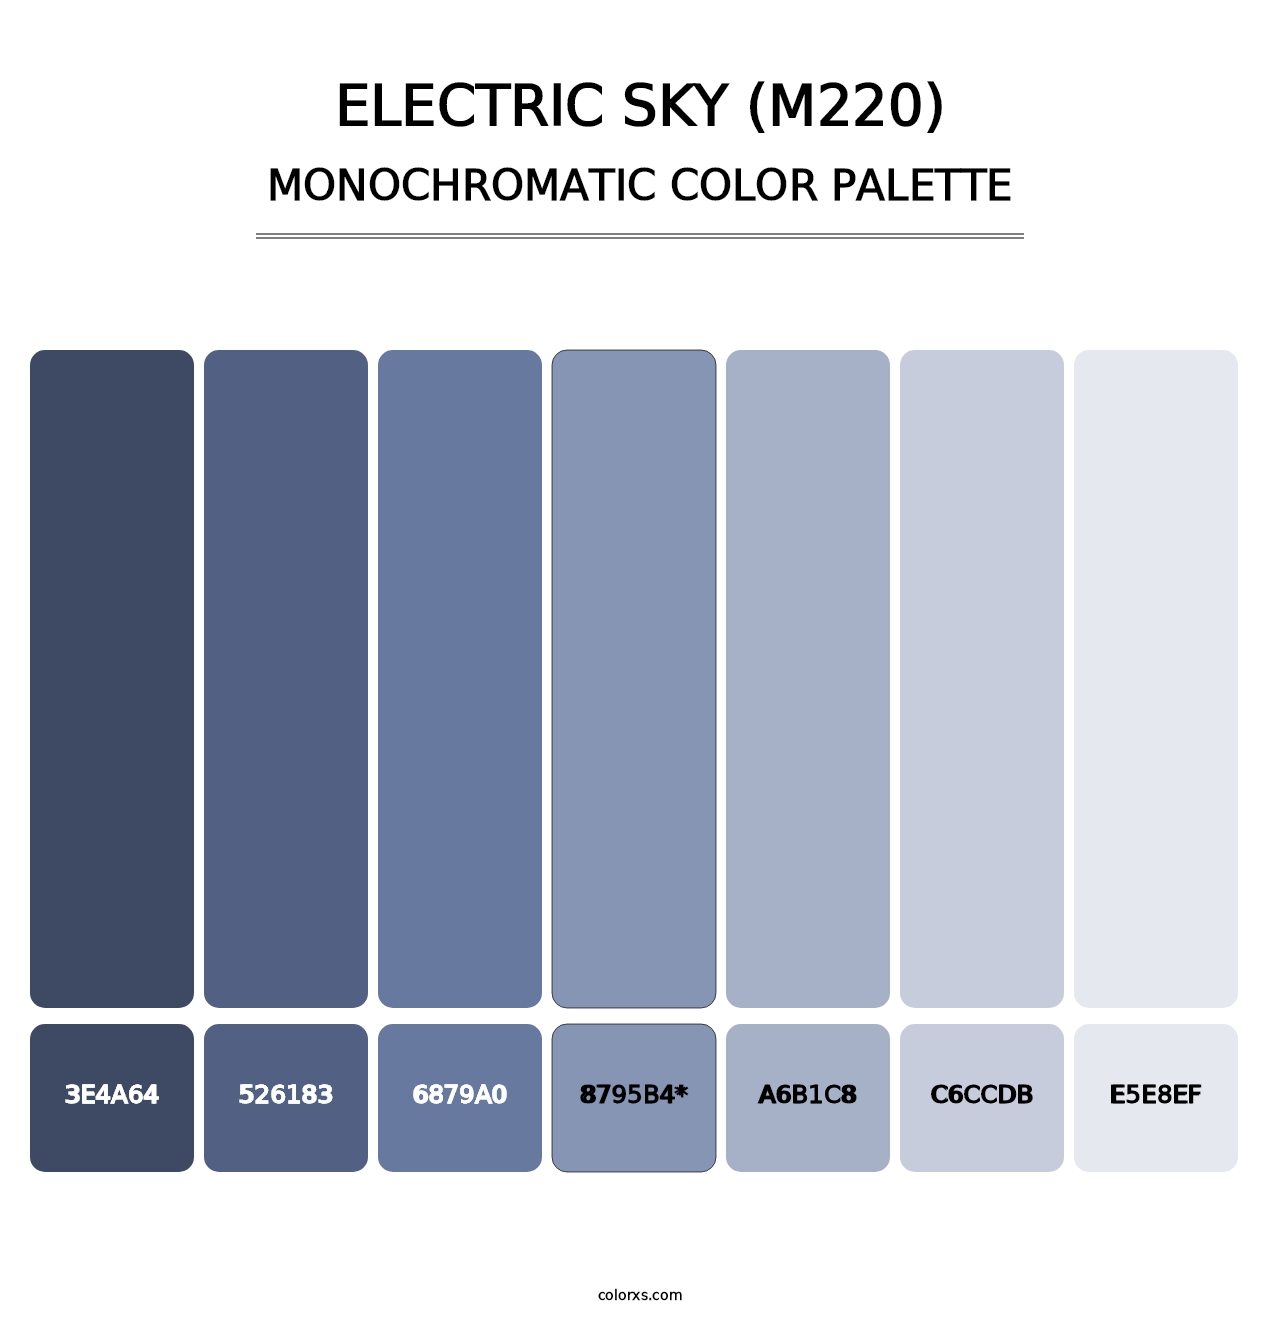 Electric Sky (M220) - Monochromatic Color Palette